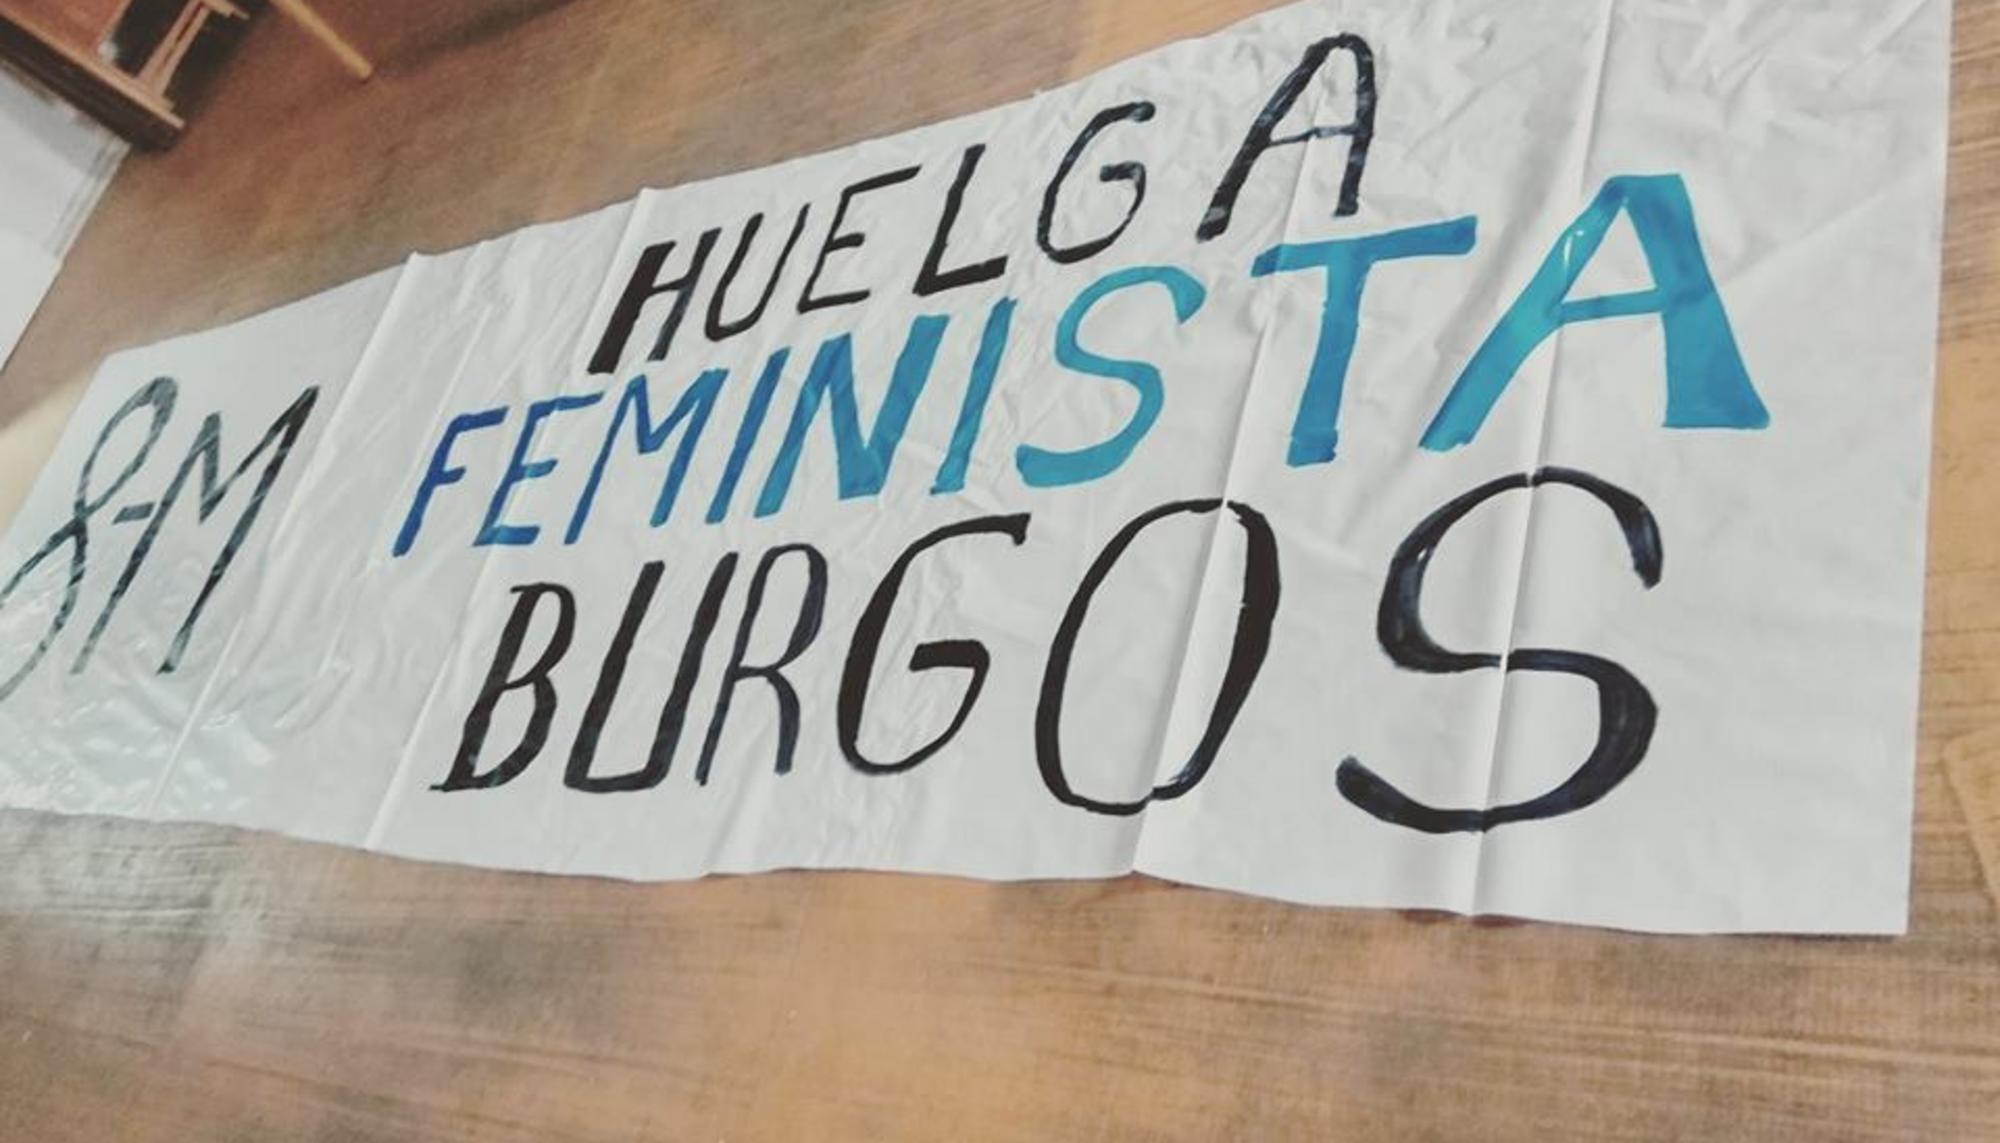 Huelga Feminista Burgos